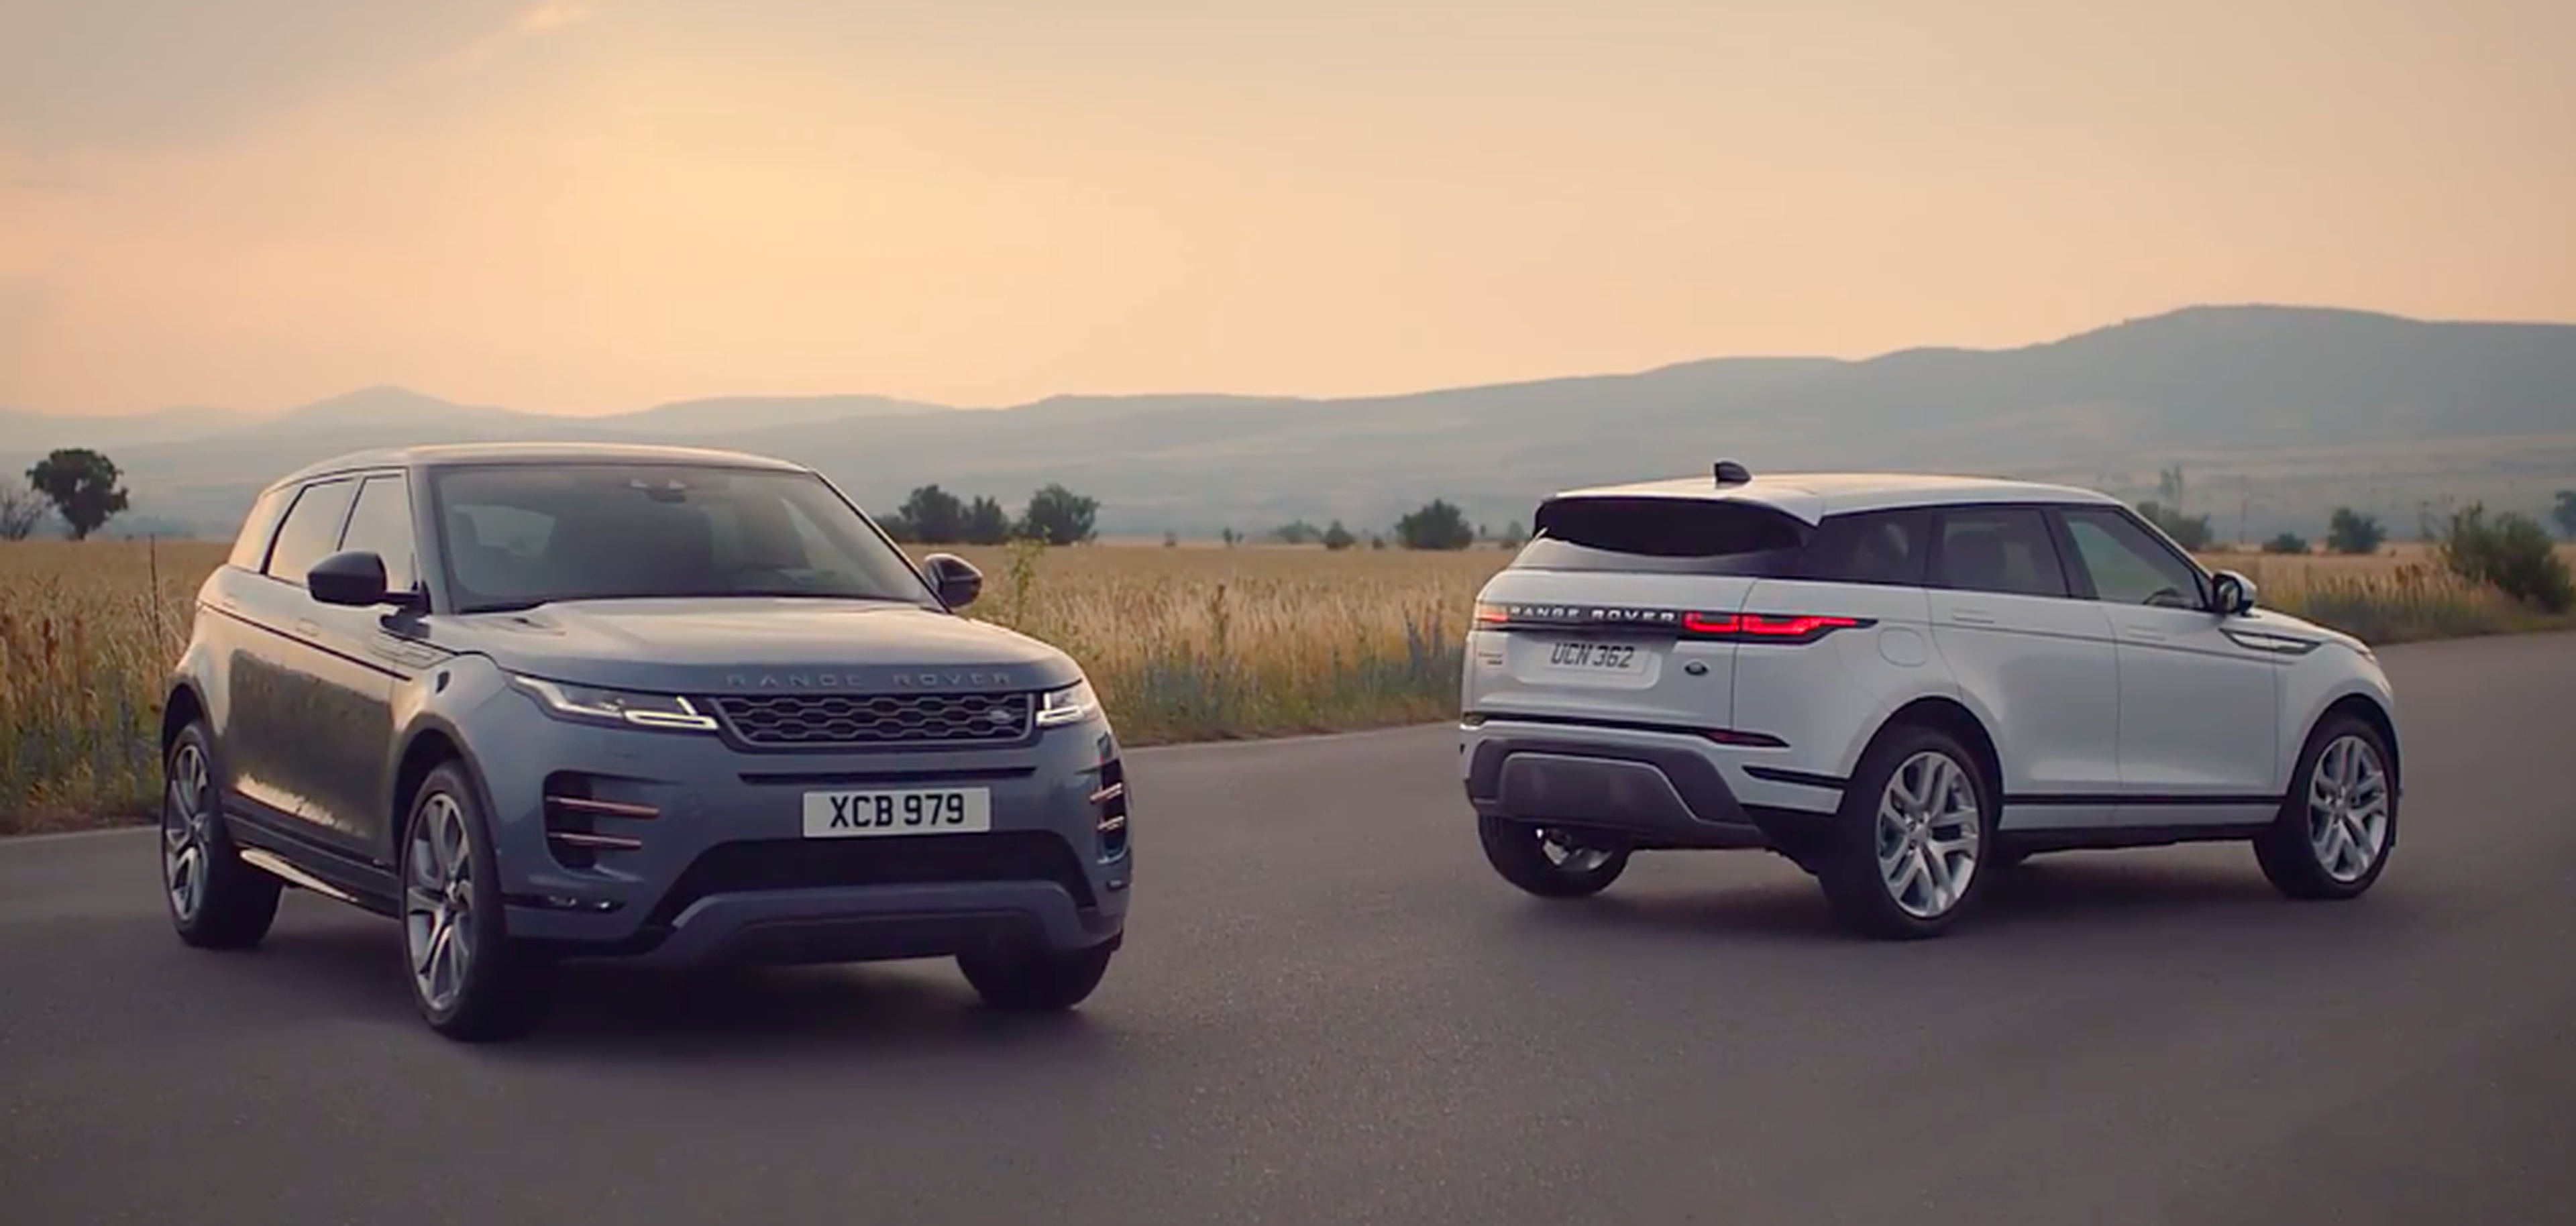 VÍDEO: Range Rover Evoque 2019, así es su nuevo e impactante diseño